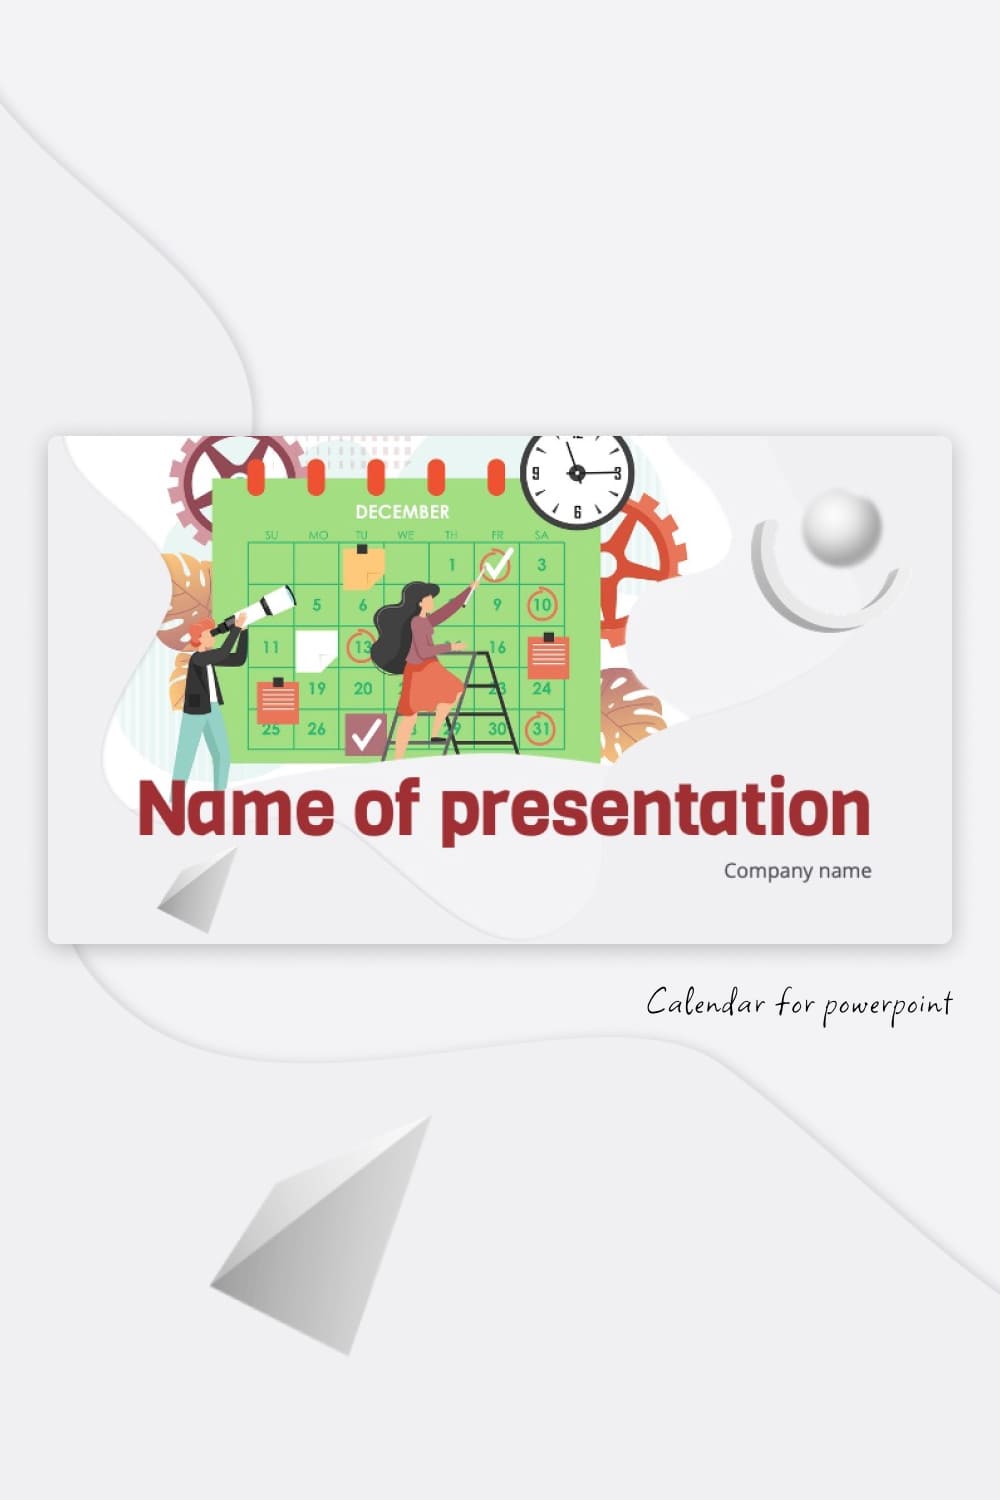 Calendar For Powerpoint Pinterest.